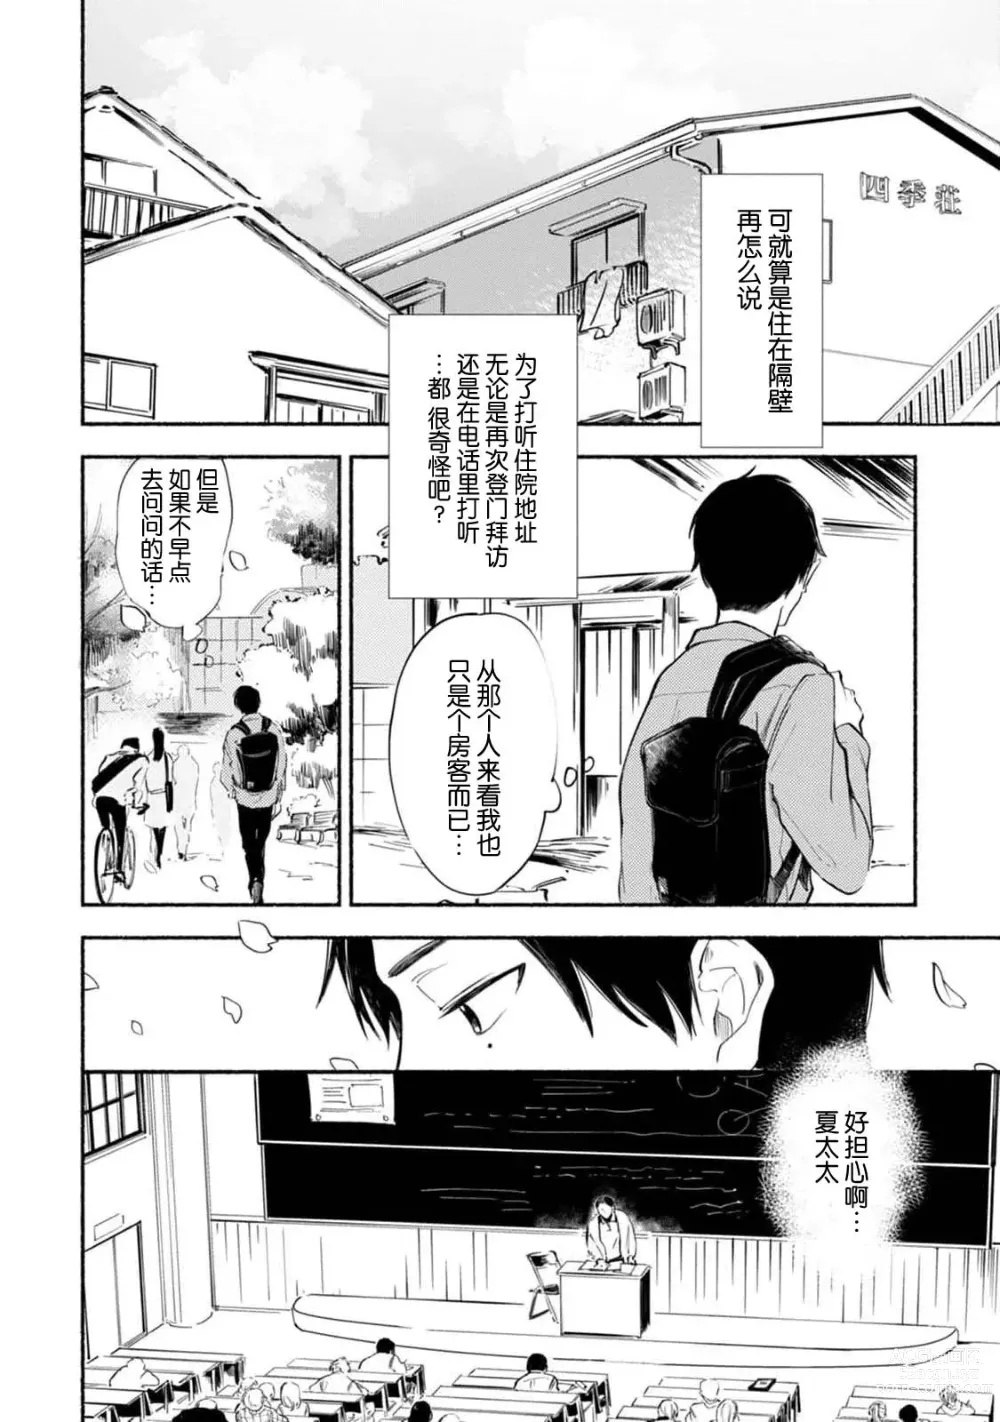 Page 16 of manga 与春为邻